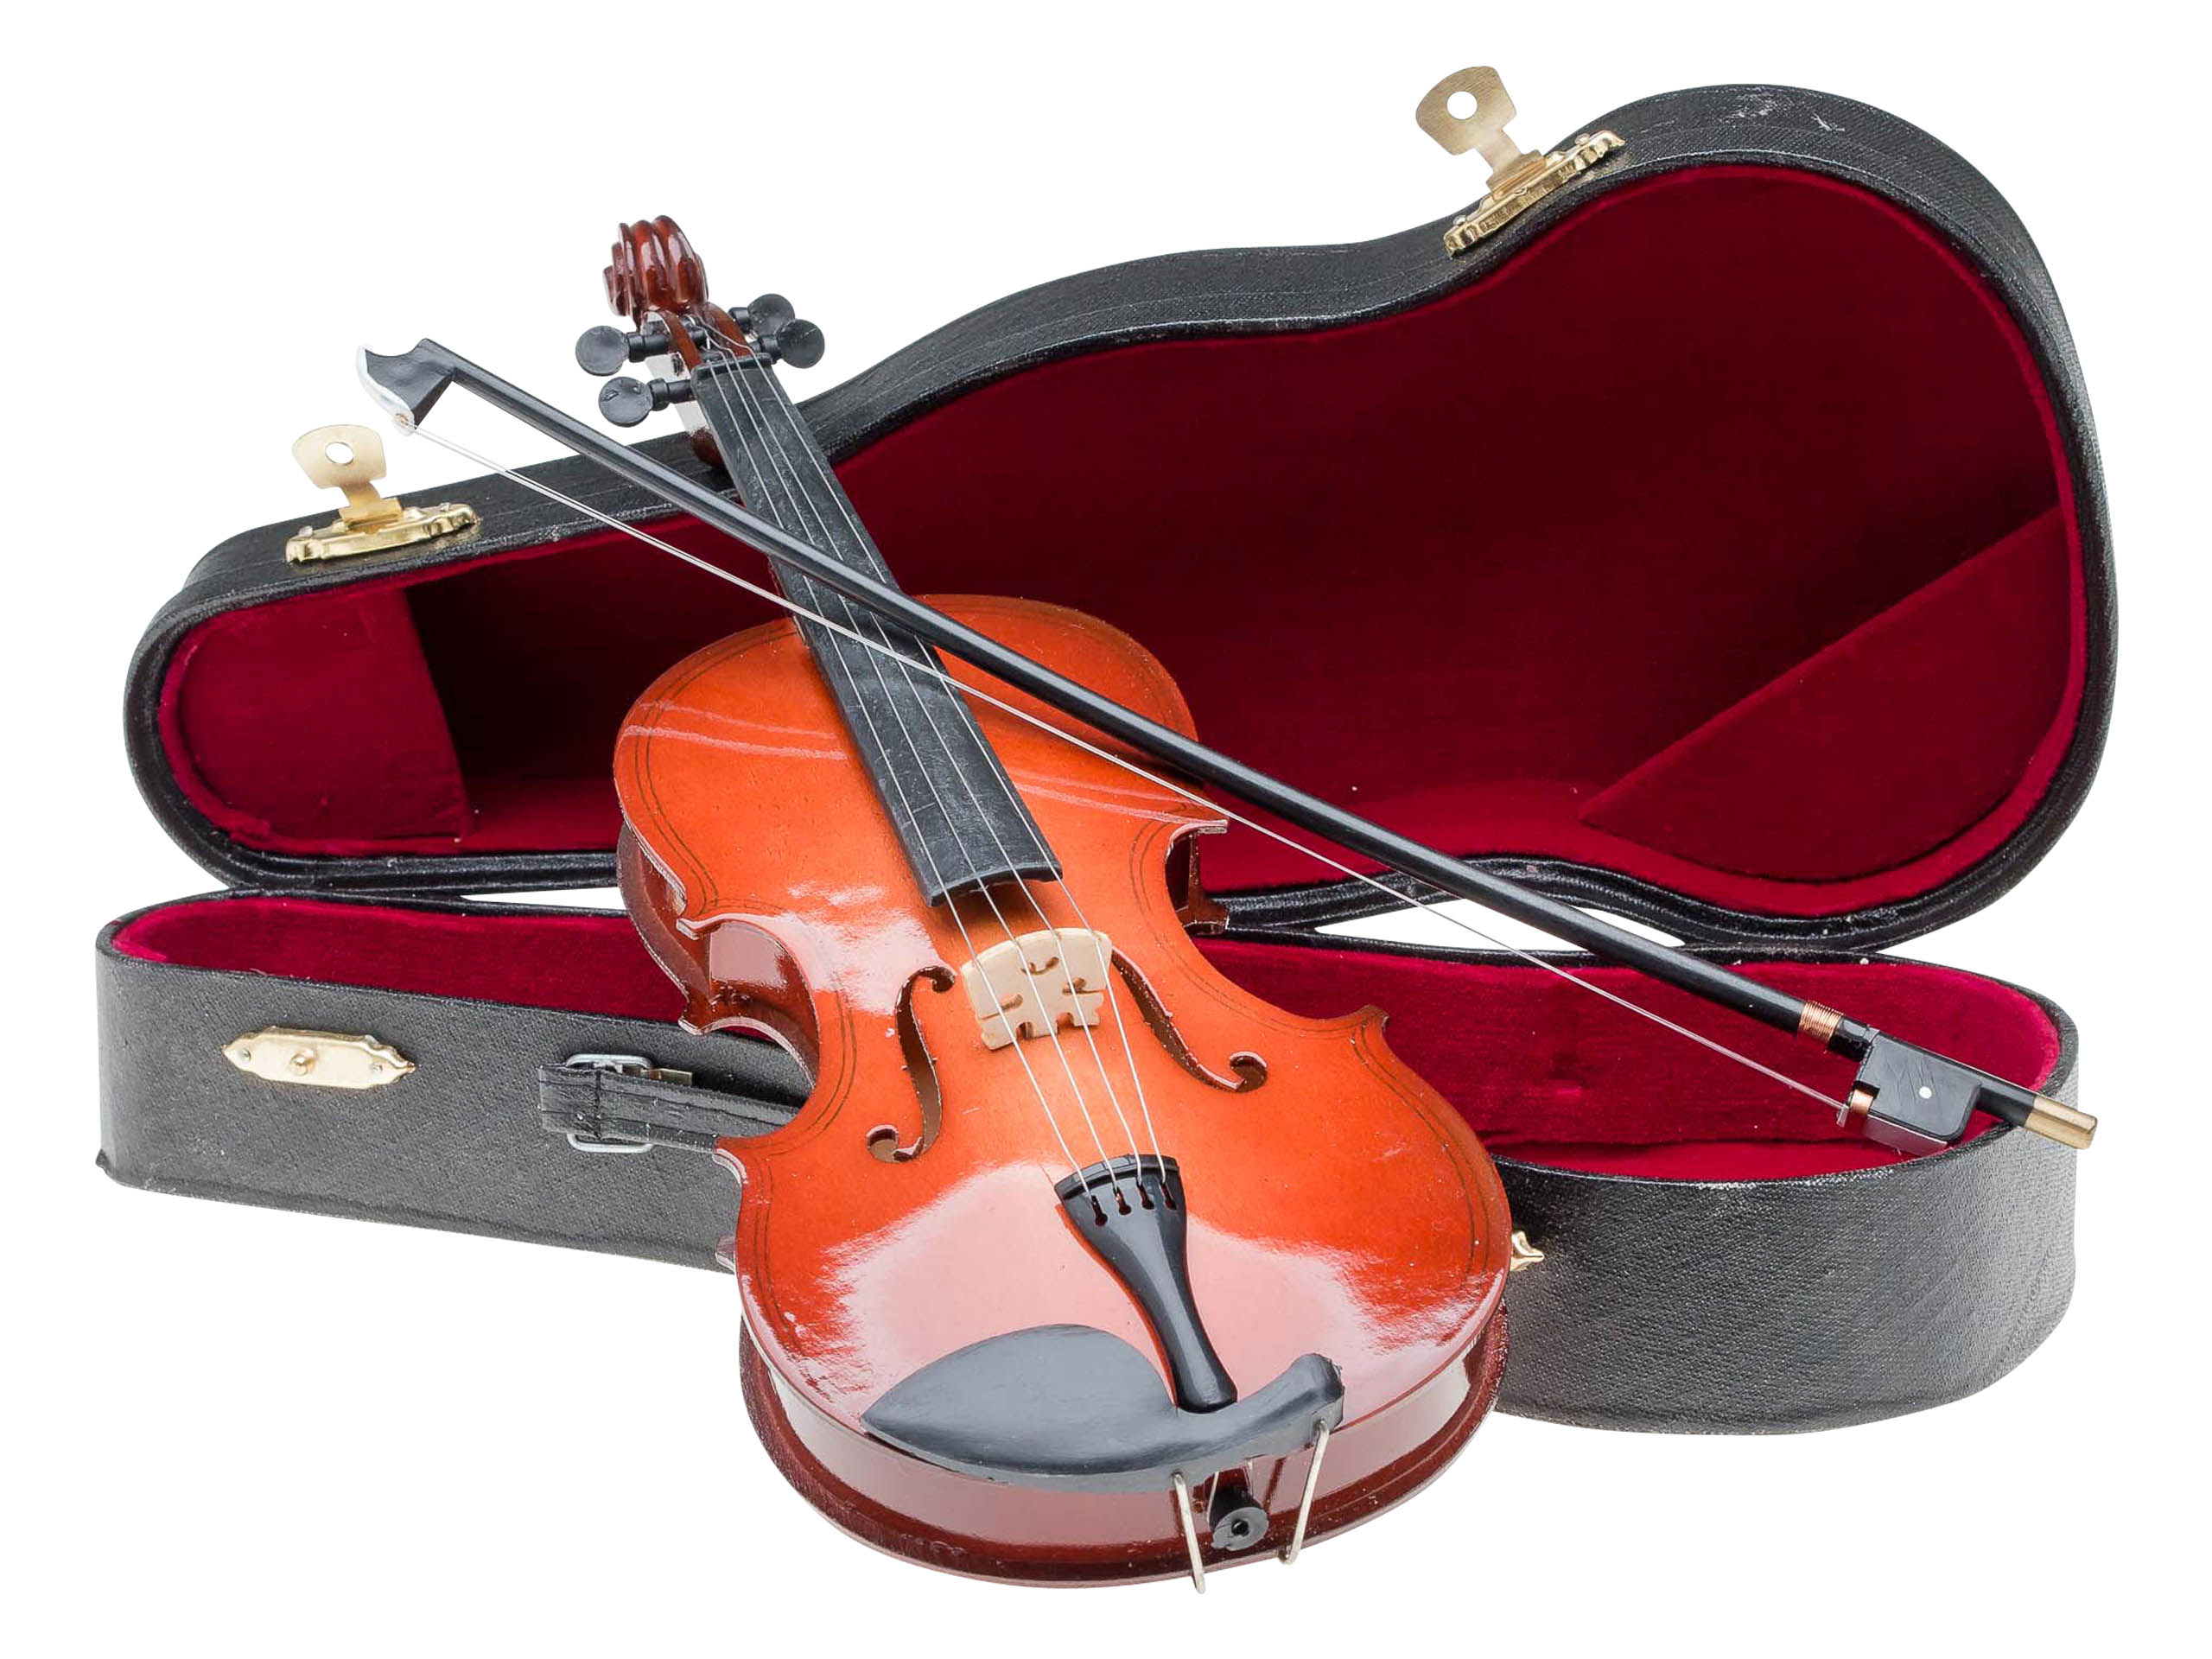 Miniatur Geige 25cm Violine mit Bogen und Koffer Deko Antik-Stil ohne  Funktion | aubaho ®